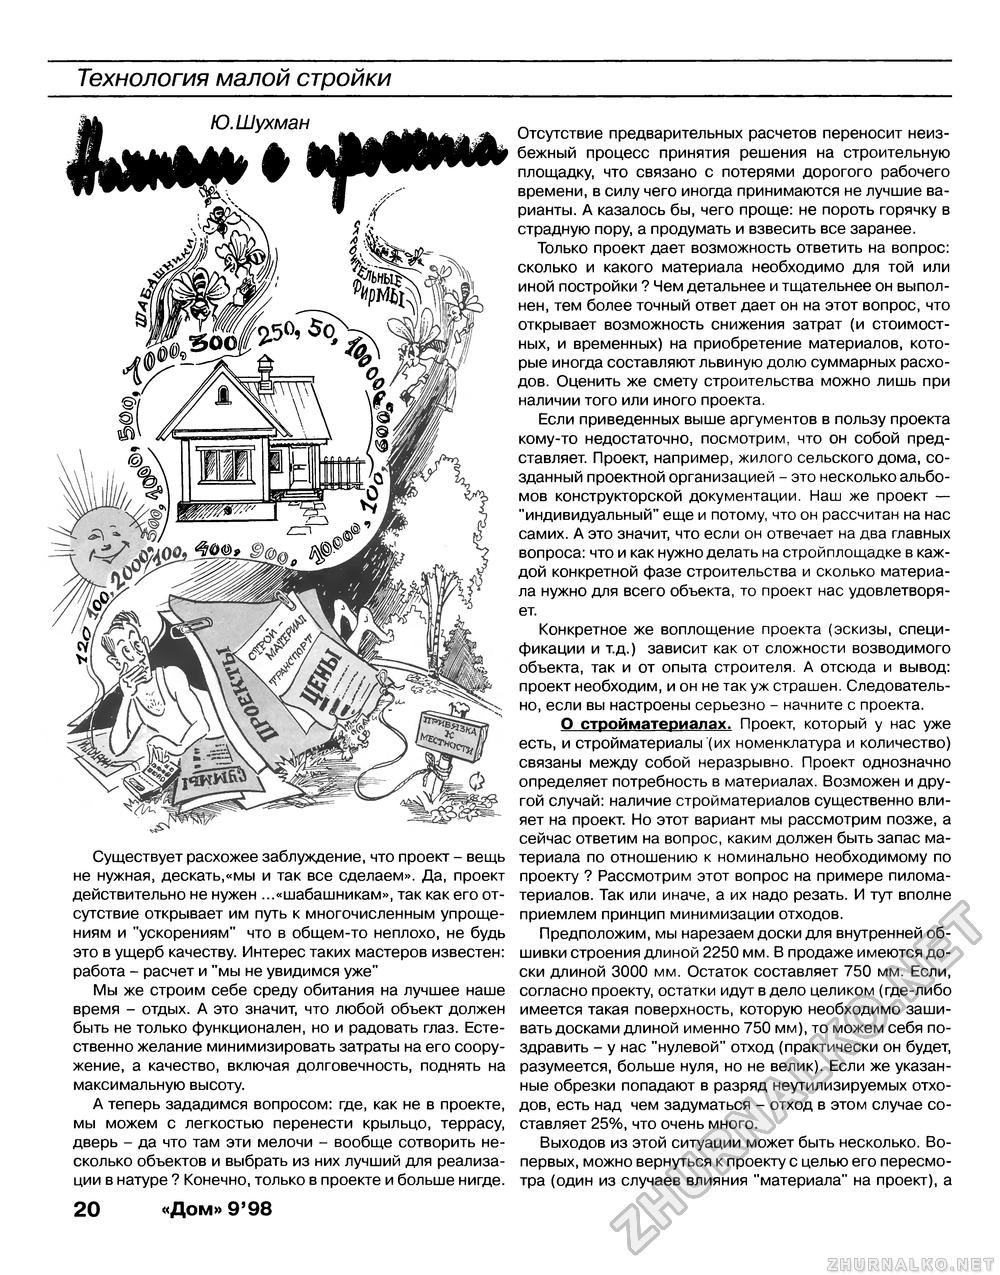 Дом 1998-09, страница 20